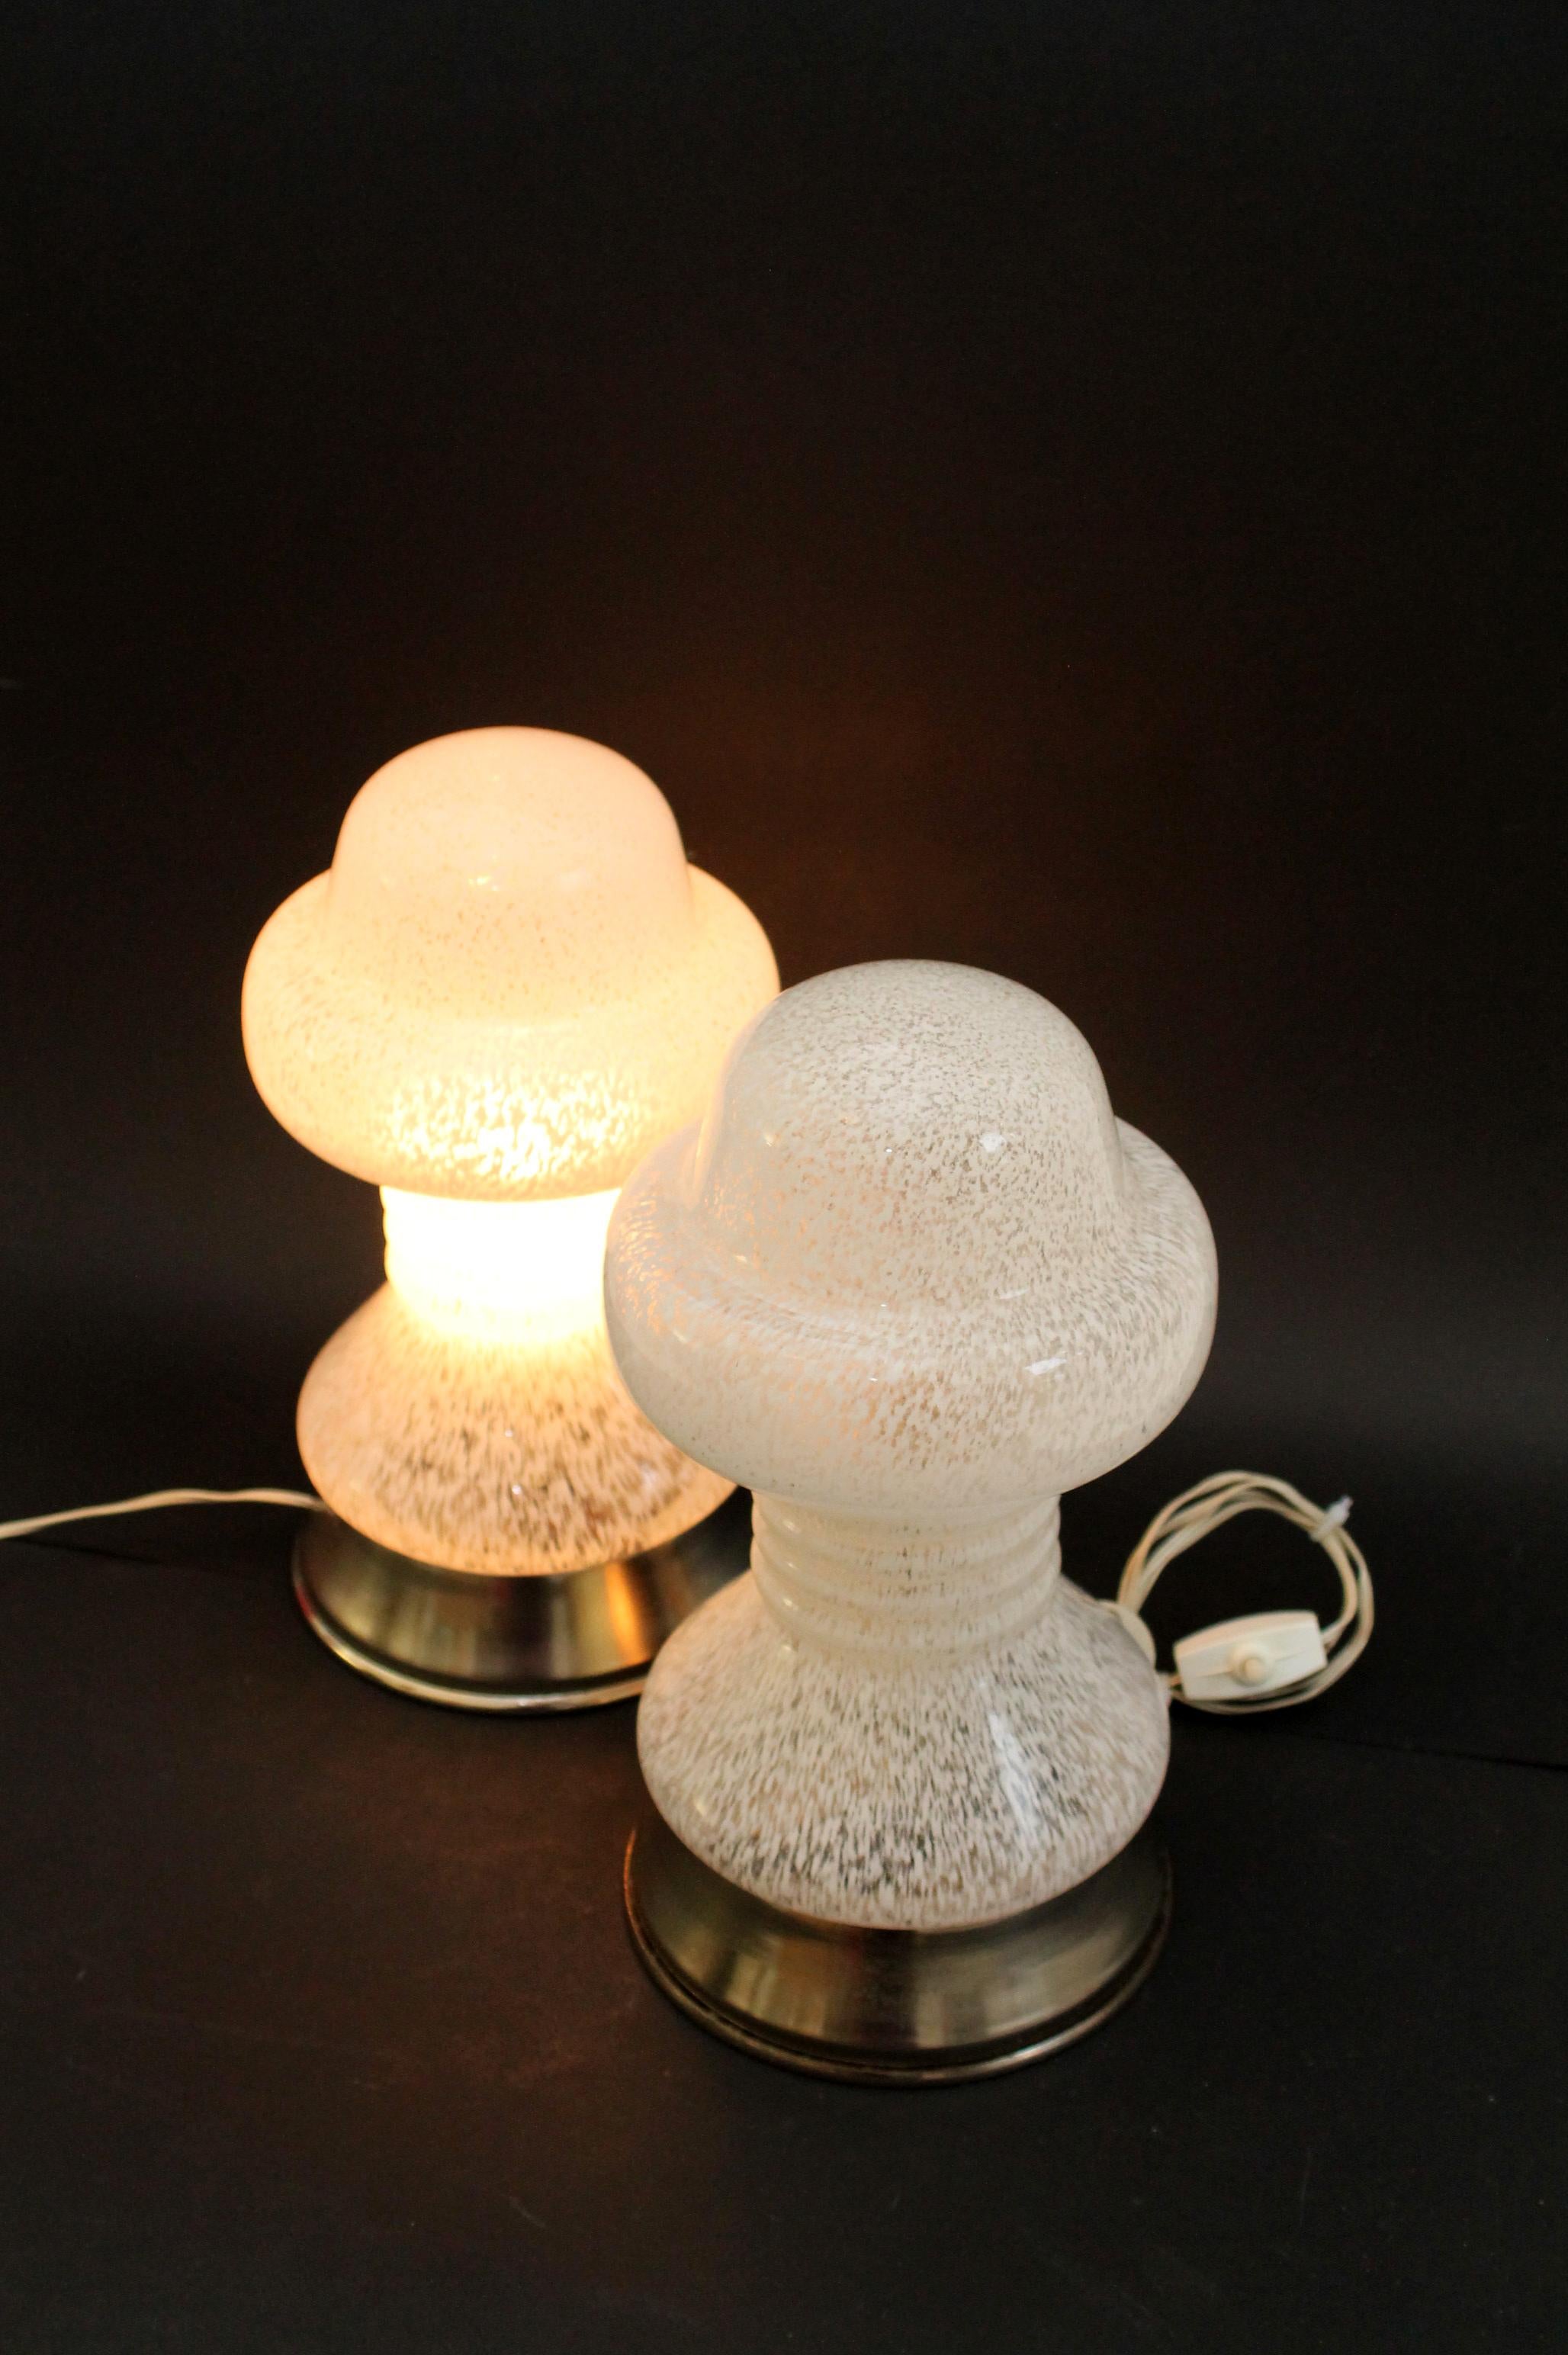 Ensemble de magnifiques petites lampes de table/de bureau originales de Murano

Lampe de table en marbre blanc/clair des années 1970. 
Technique : soufflé à la main. Réalisé à partir d'une seule feuille de verre de Murano fabriquée à la